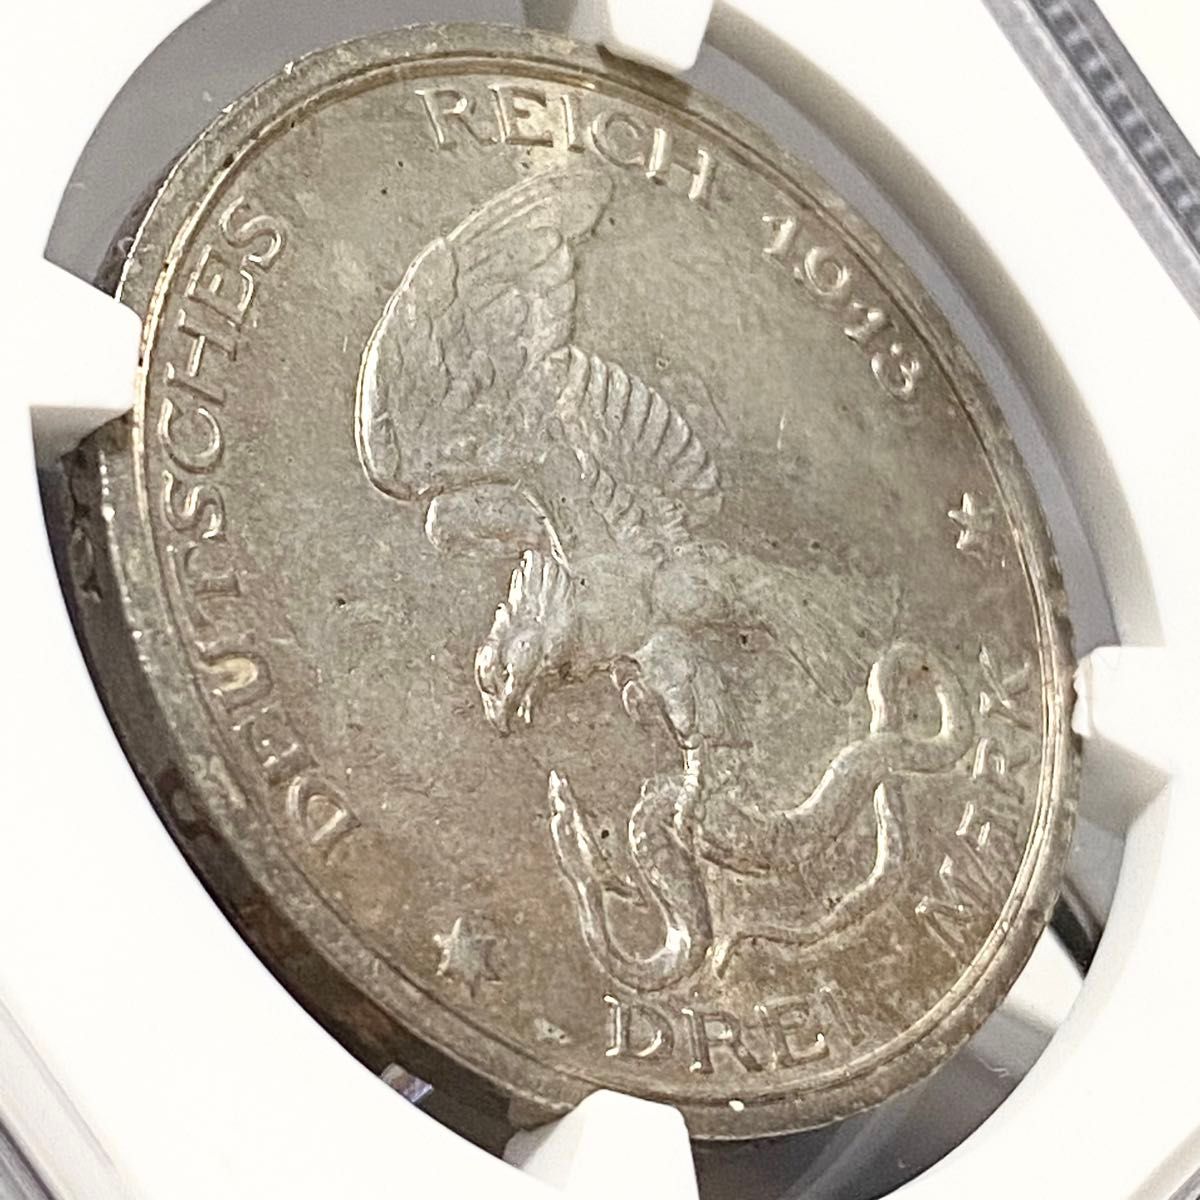 【高鑑定】1913年 NGC MS64 ドイツ プロイセン 3マルク 銀貨 ナポレオン 100周年 モダン アンティーク コイン